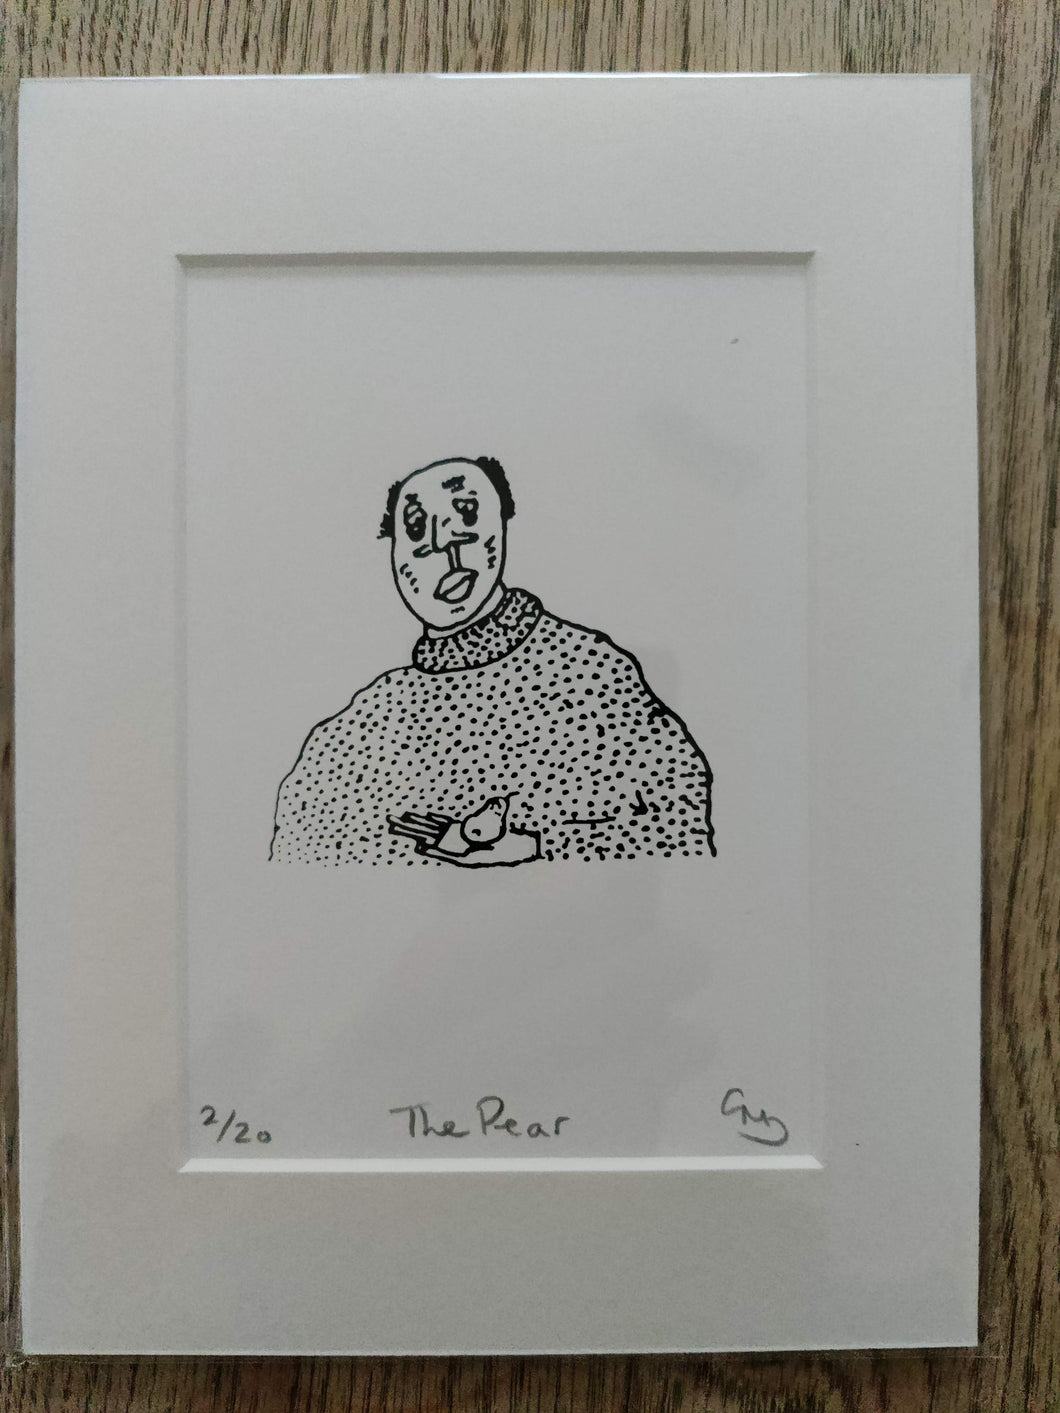 The Pear - An Original Hand Made Silk Screen Print by Gerard McDonagh / Bravespear